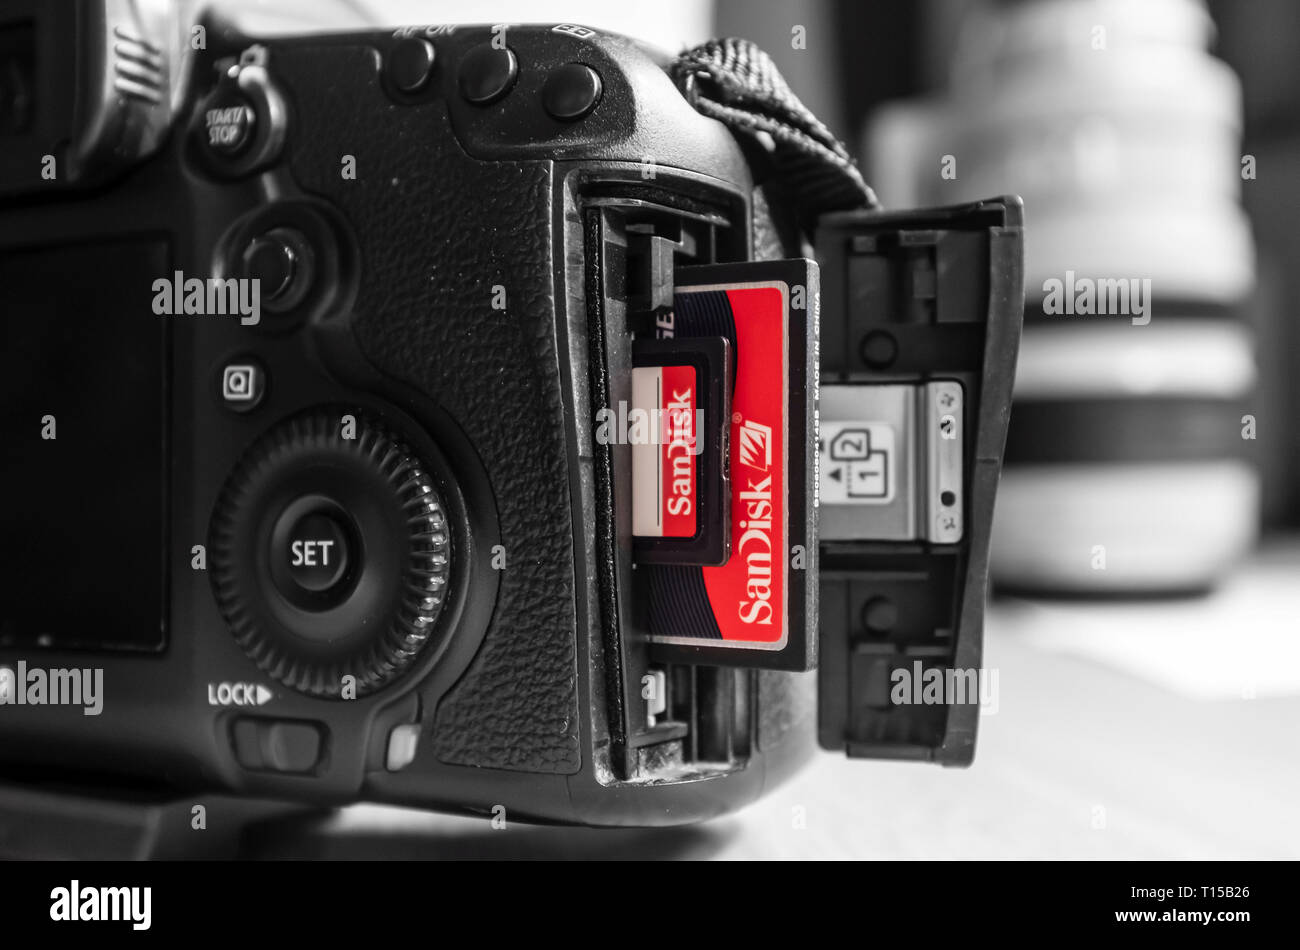 UK - Février 08, 2019. SD et Compact Flash Sandisk cartes mémoire CF dans une fente de l'appareil photo Canon. Sandisk est la marque leader de cartes mémoire Banque D'Images